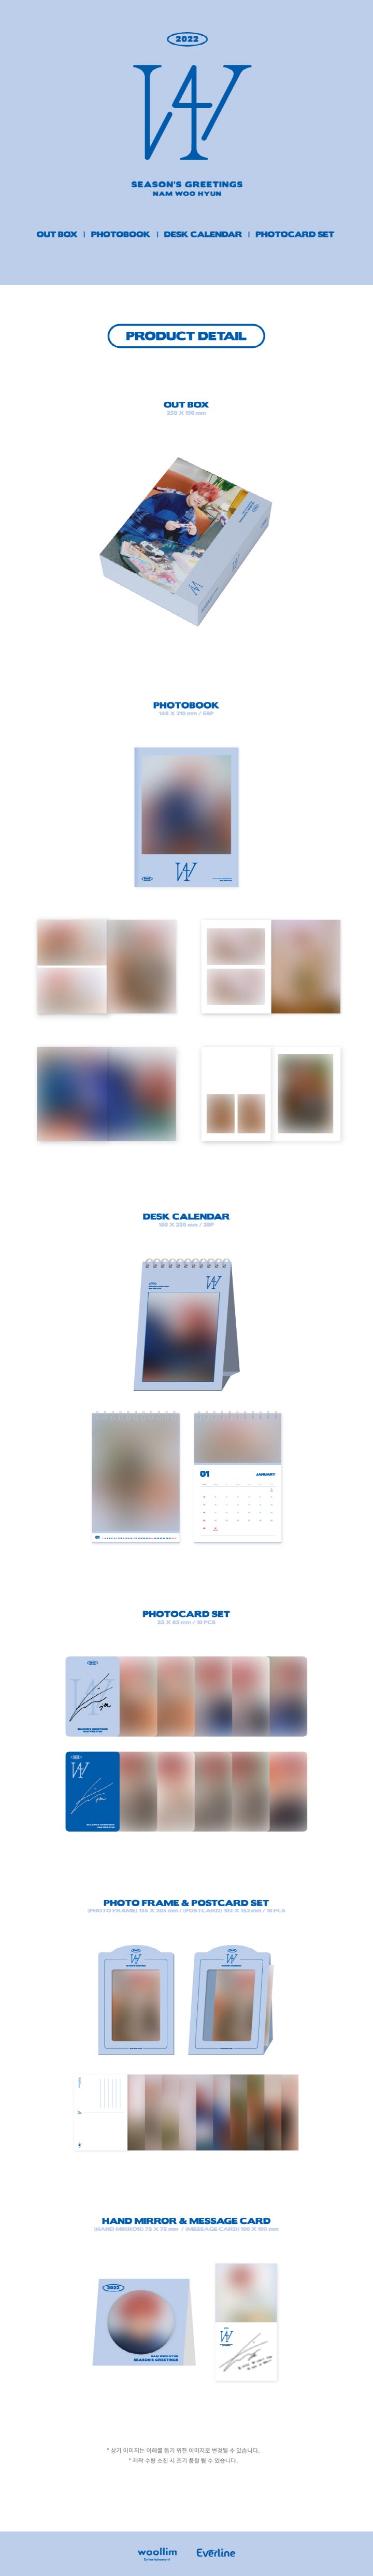 1 Photo Book (68 pages)
1 Desk Calendar
1 Photo Card Set (10 cards in a set)
1 Photo Frame & Postcard Set (10 cards in a s...